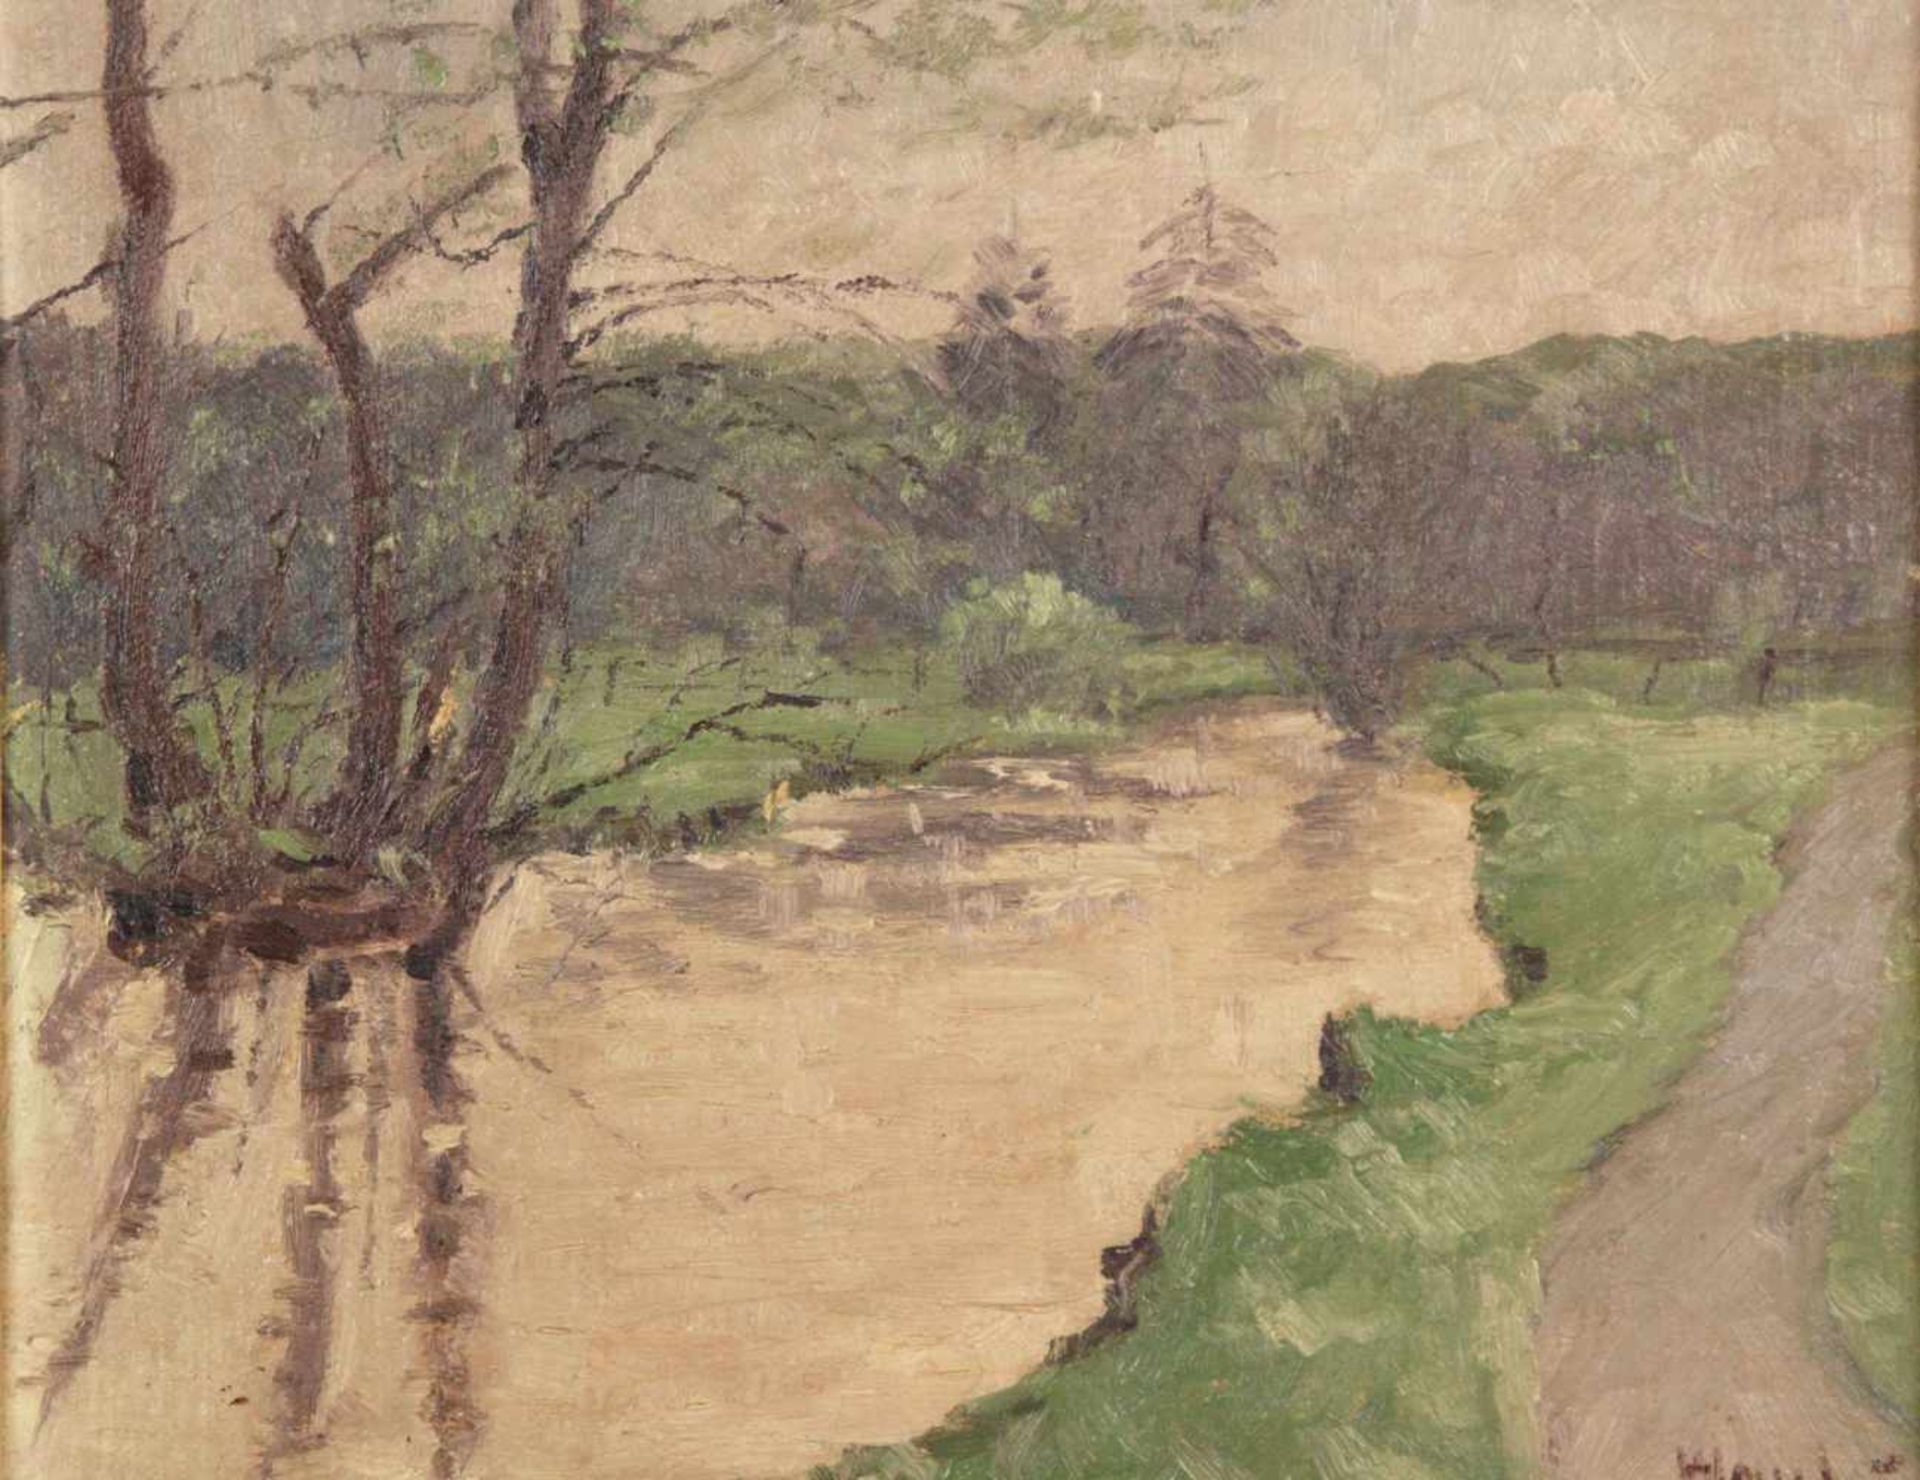 Hause, Rudolf (1877 Strasburg/Westpreußen - 1961 München)- Flusslandschaft, Öl auf Leinwand,